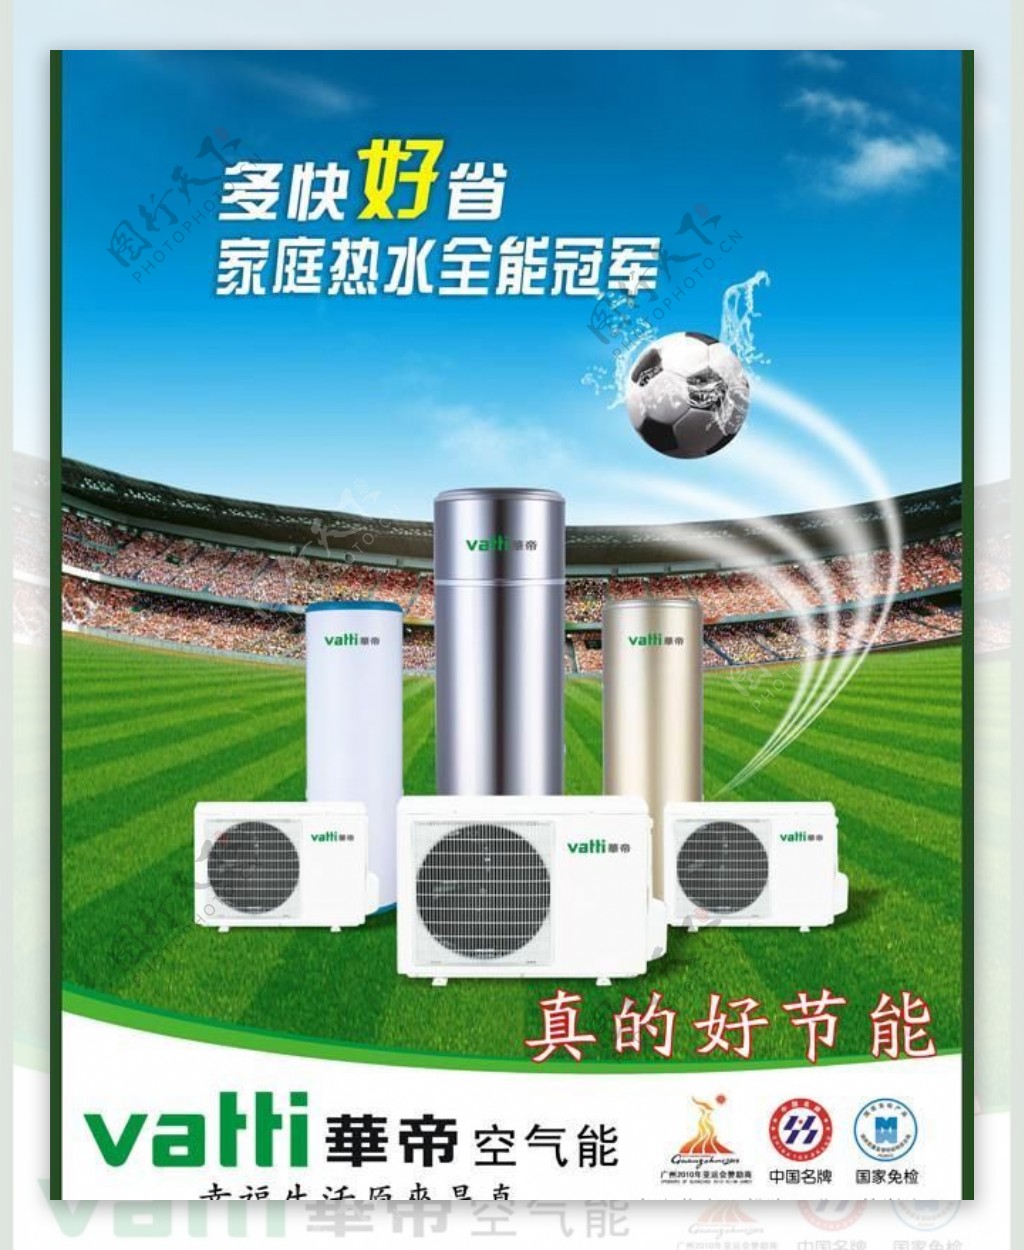 空气能华帝品牌产品广告海报图片